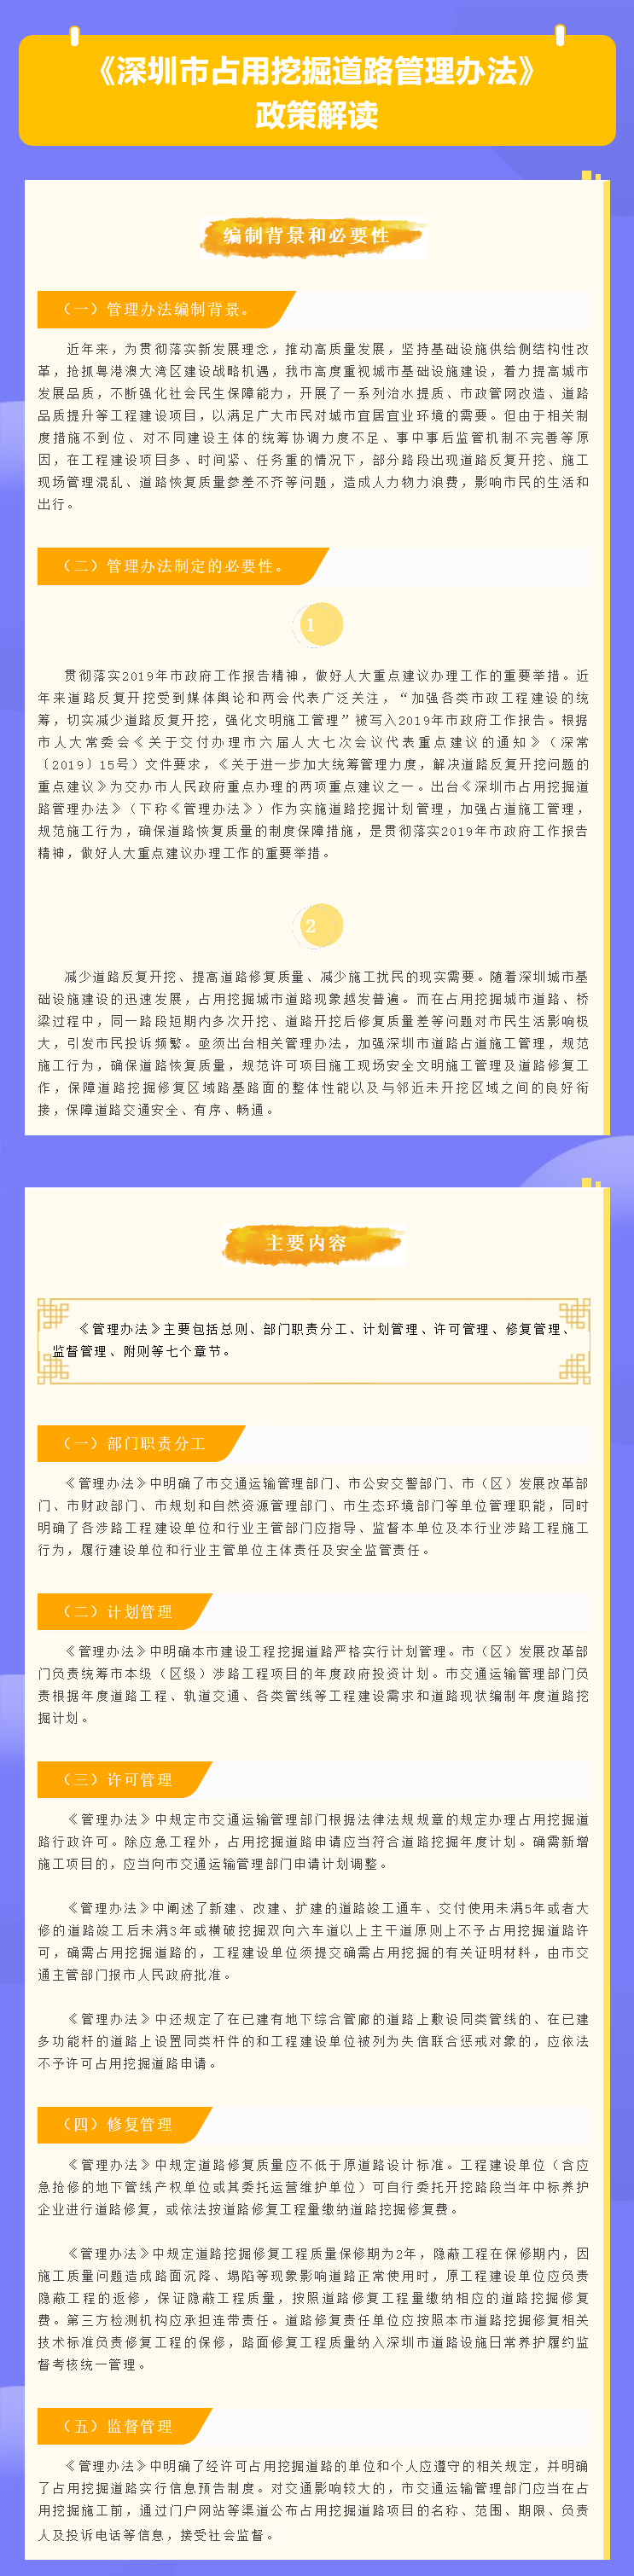 《深圳市占用挖掘道路管理办法》政策解读.png